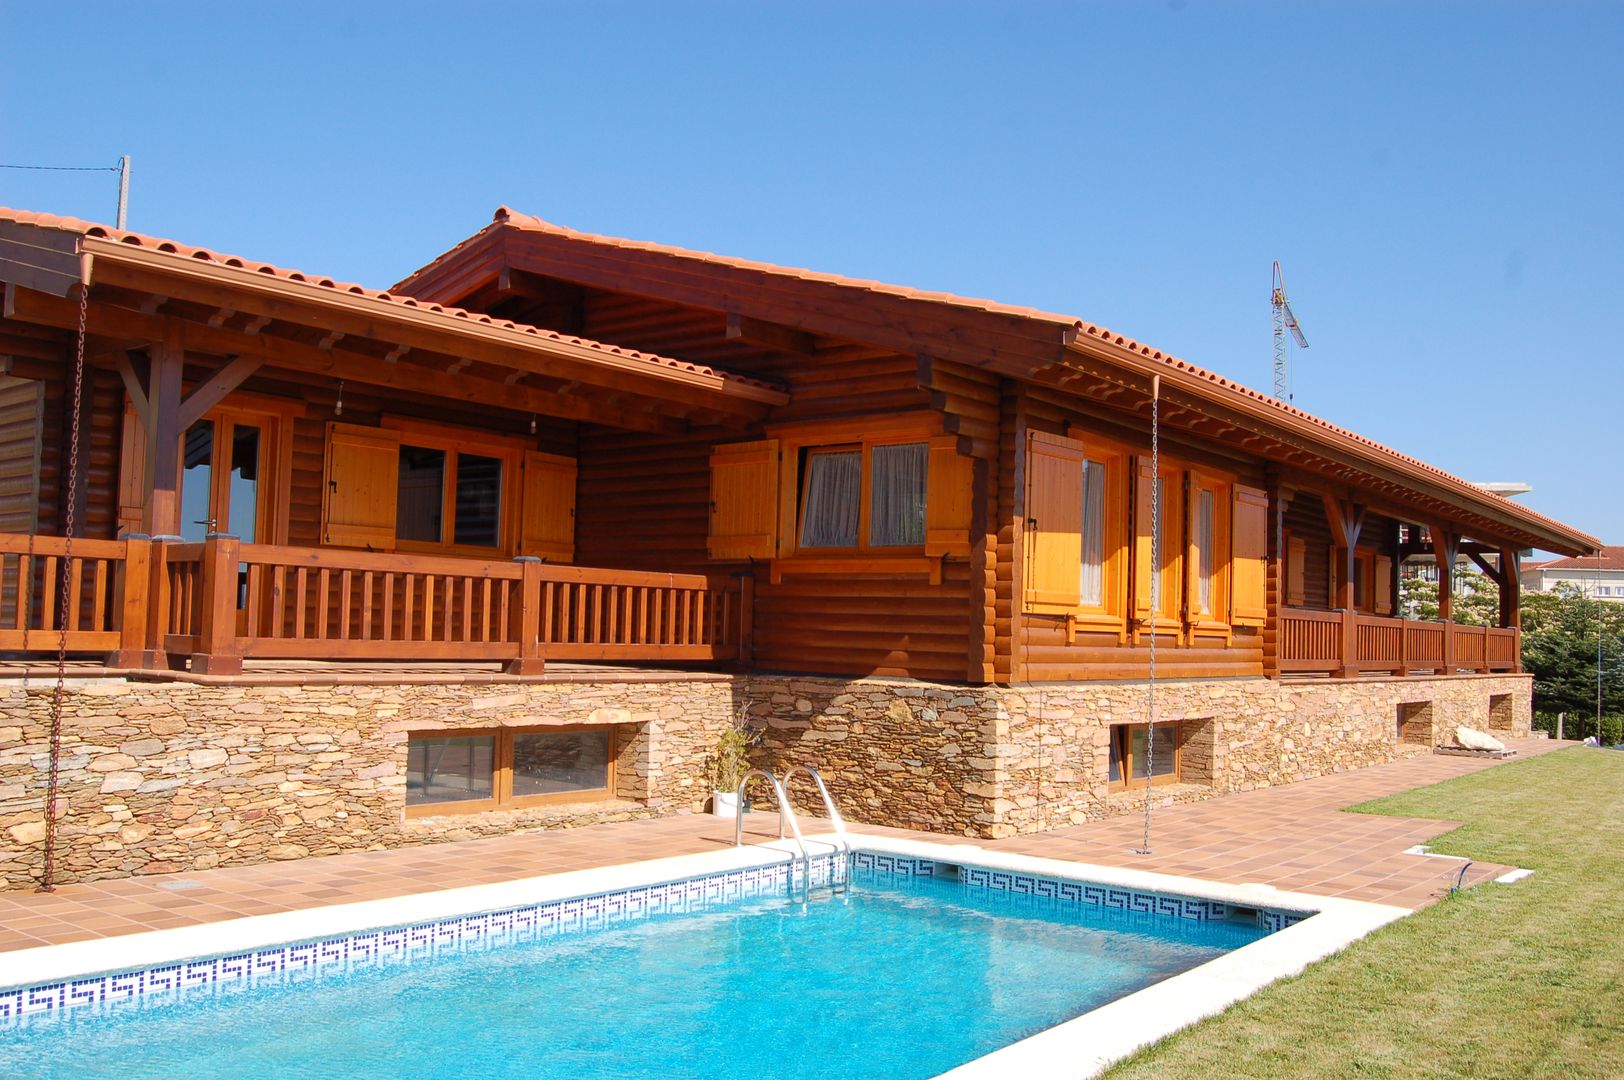 RUSTICASA | 100 projetos | Portugal + Espanha, RUSTICASA RUSTICASA منزل خشبي خشب نقي Multicolored